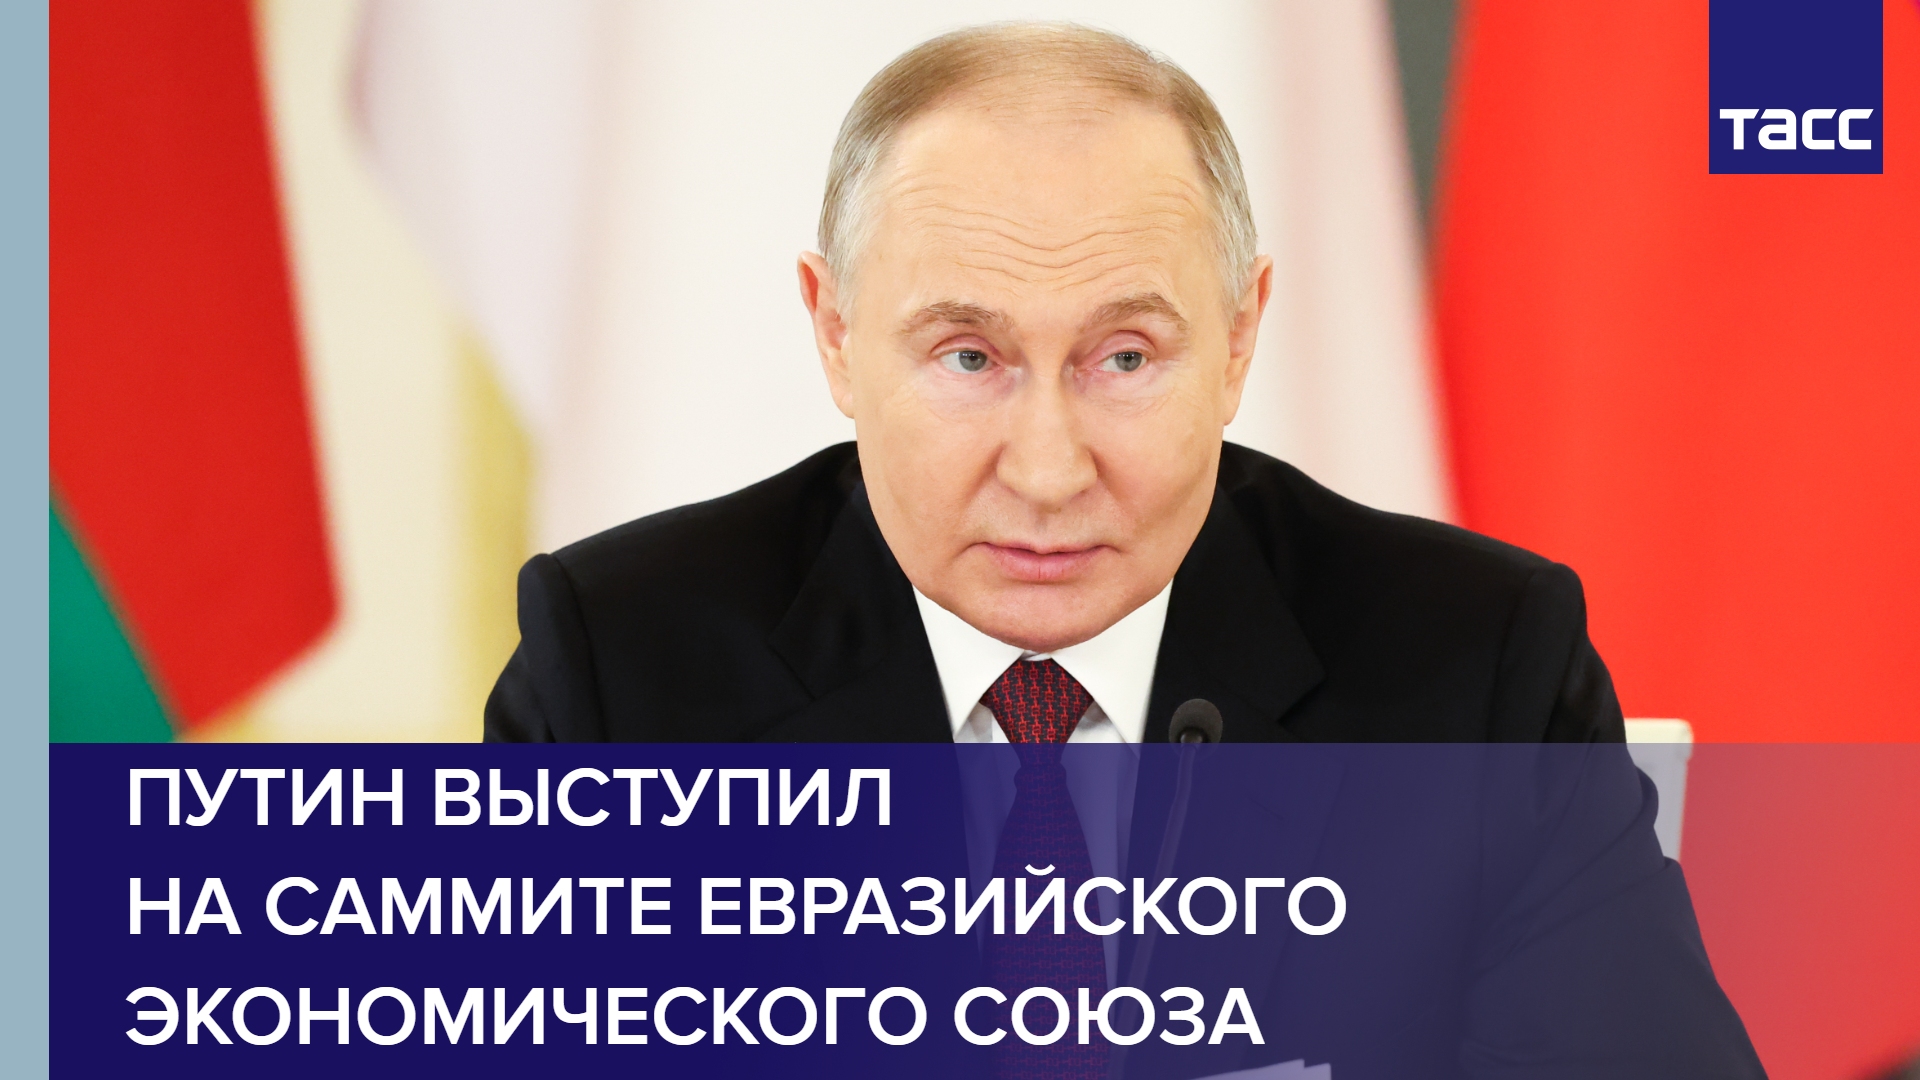 Путин выступил на саммите Евразийского экономического союза